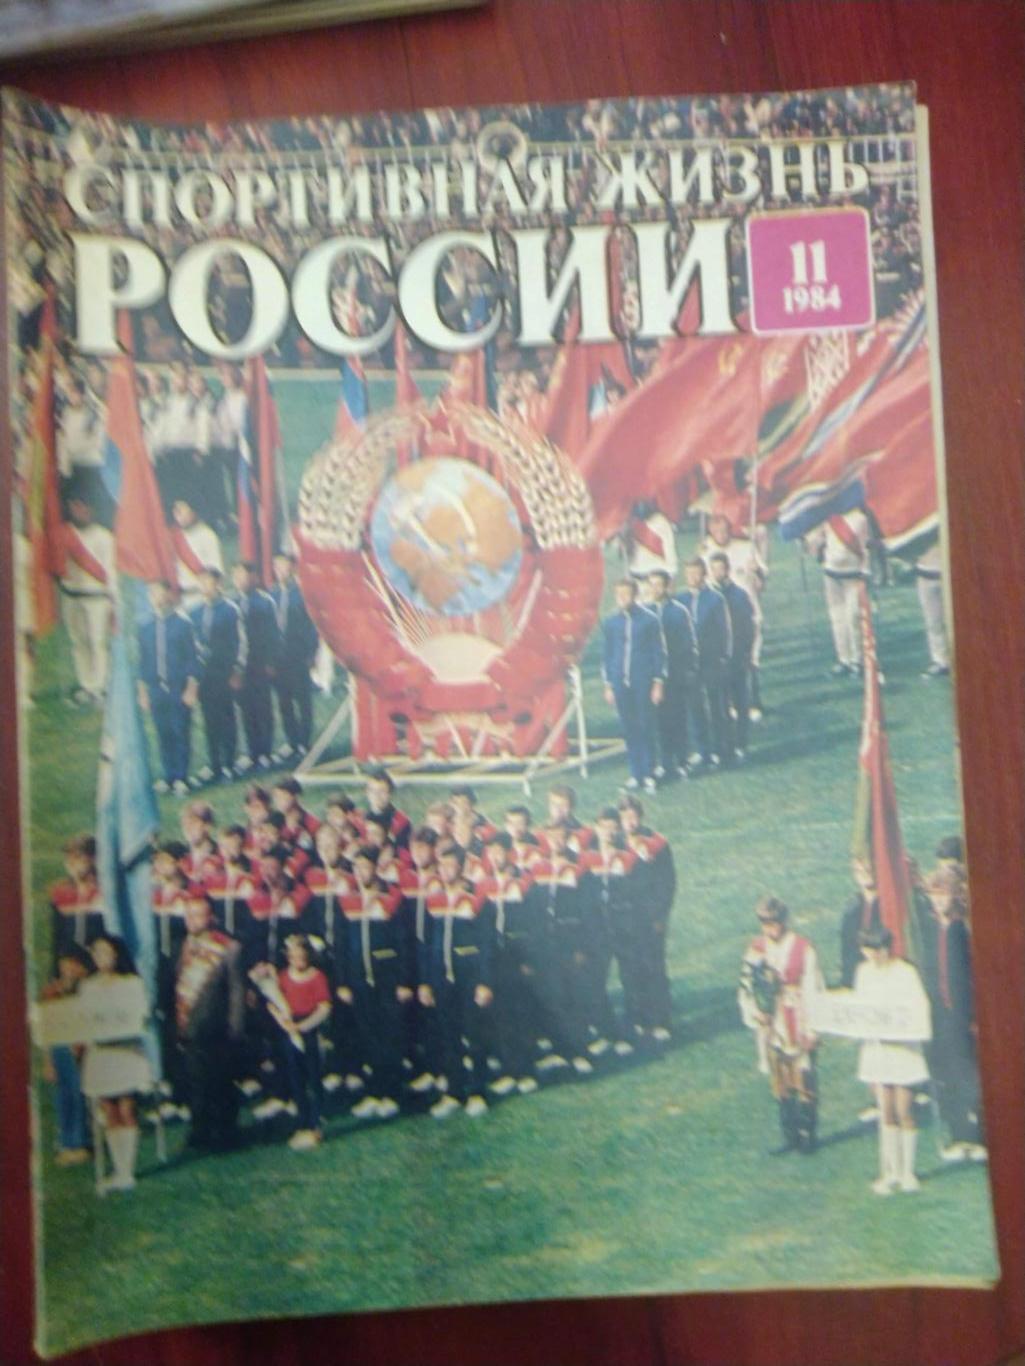 Спортивная жизнь России 1984 №11